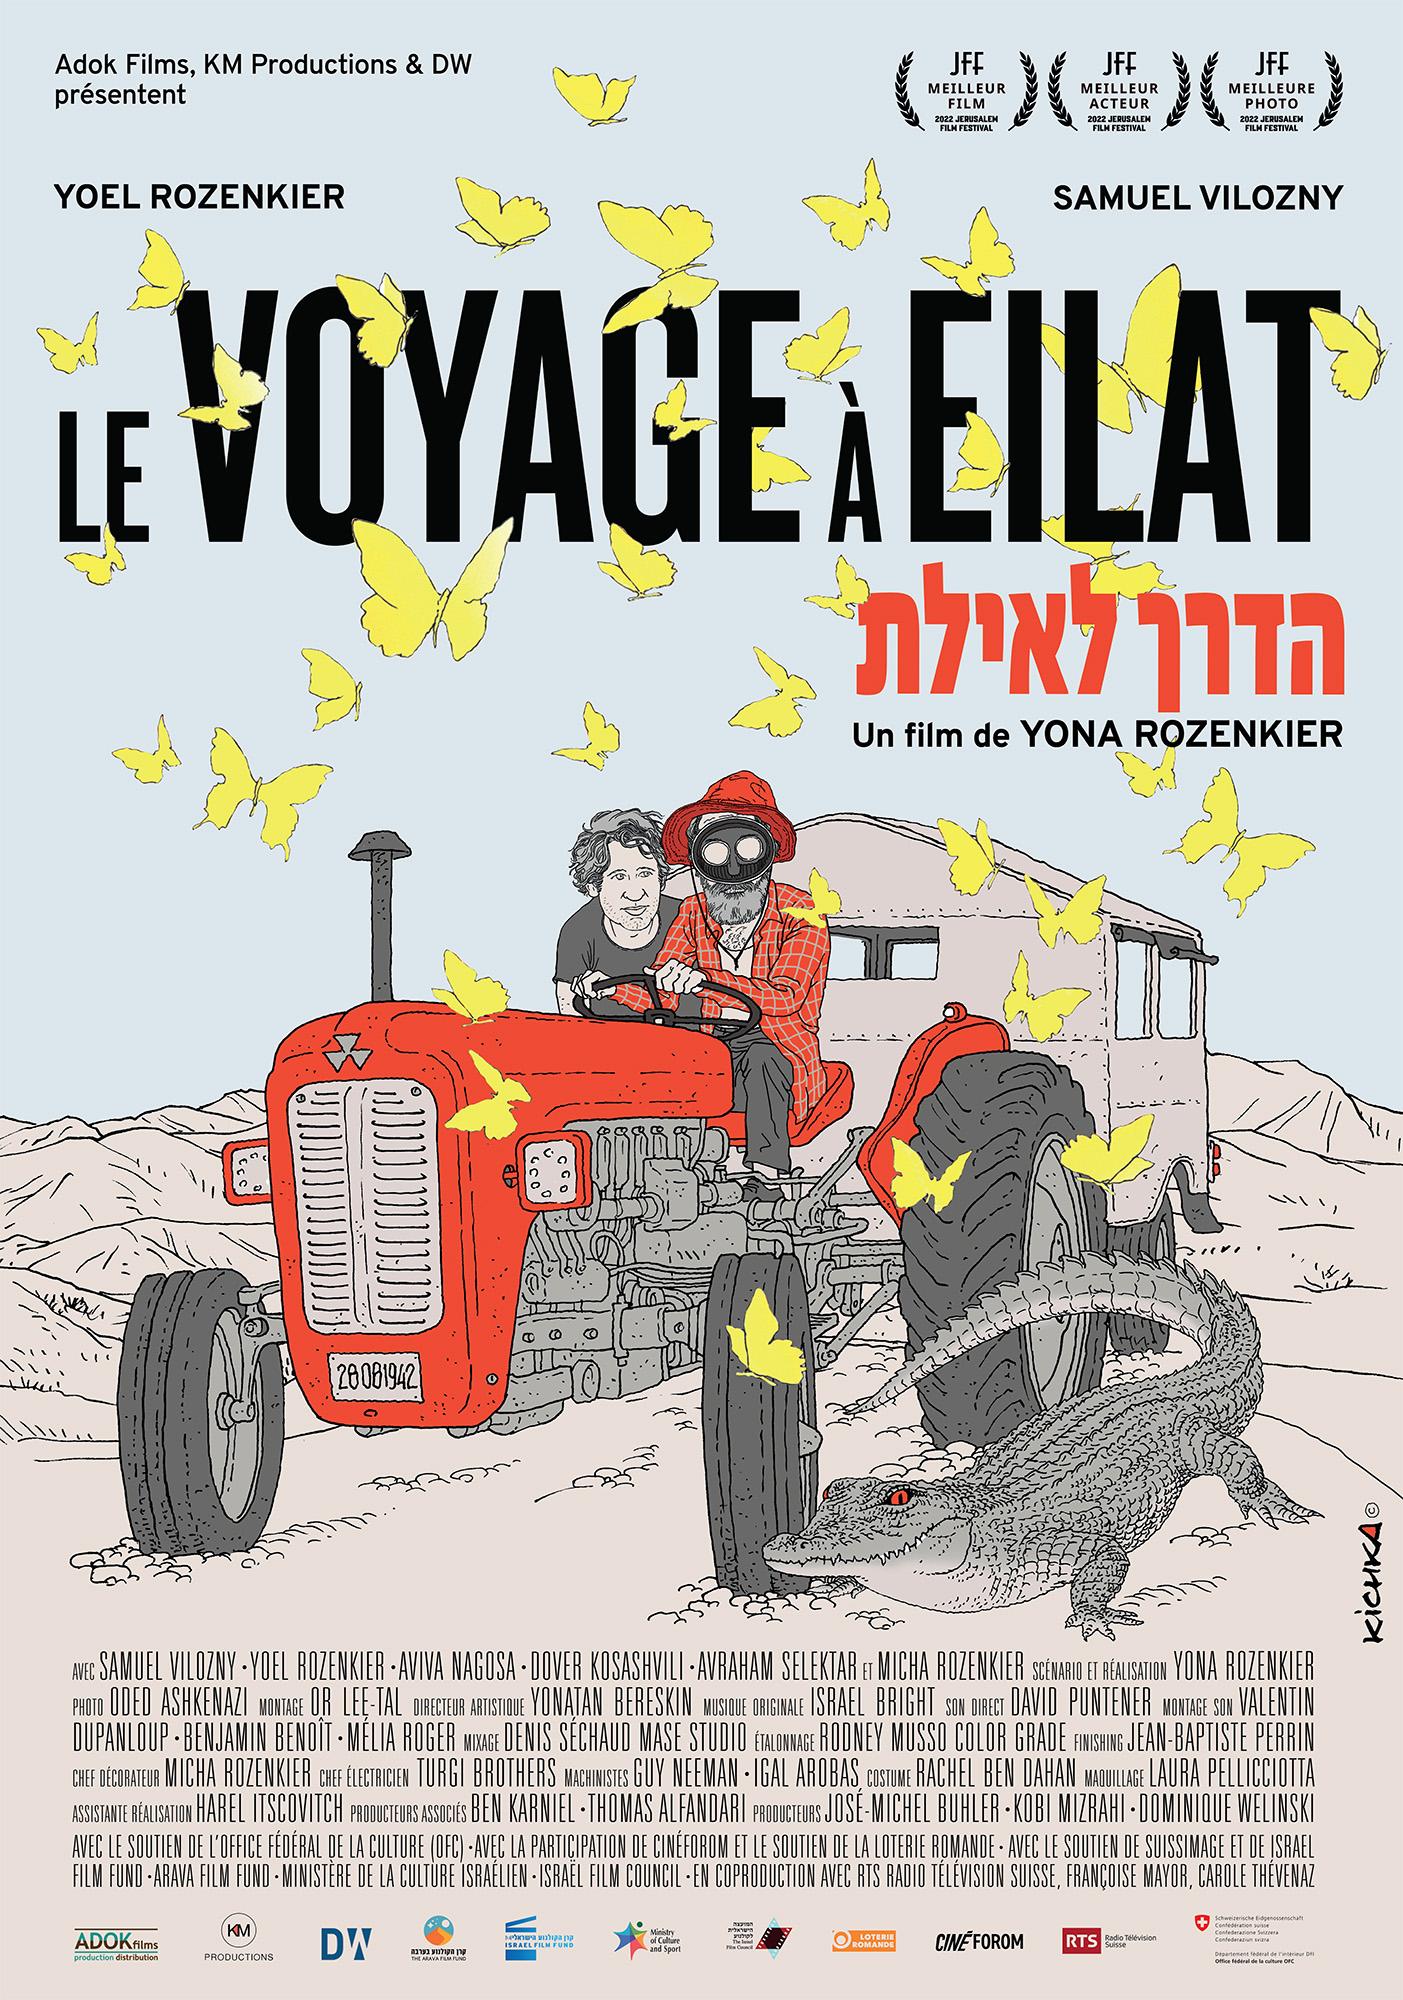 L'affiche du film "Le voyage à Eilat", un long métrage de Yona Rozenkier. [RTS - Adok Films / KM Productions / DW]